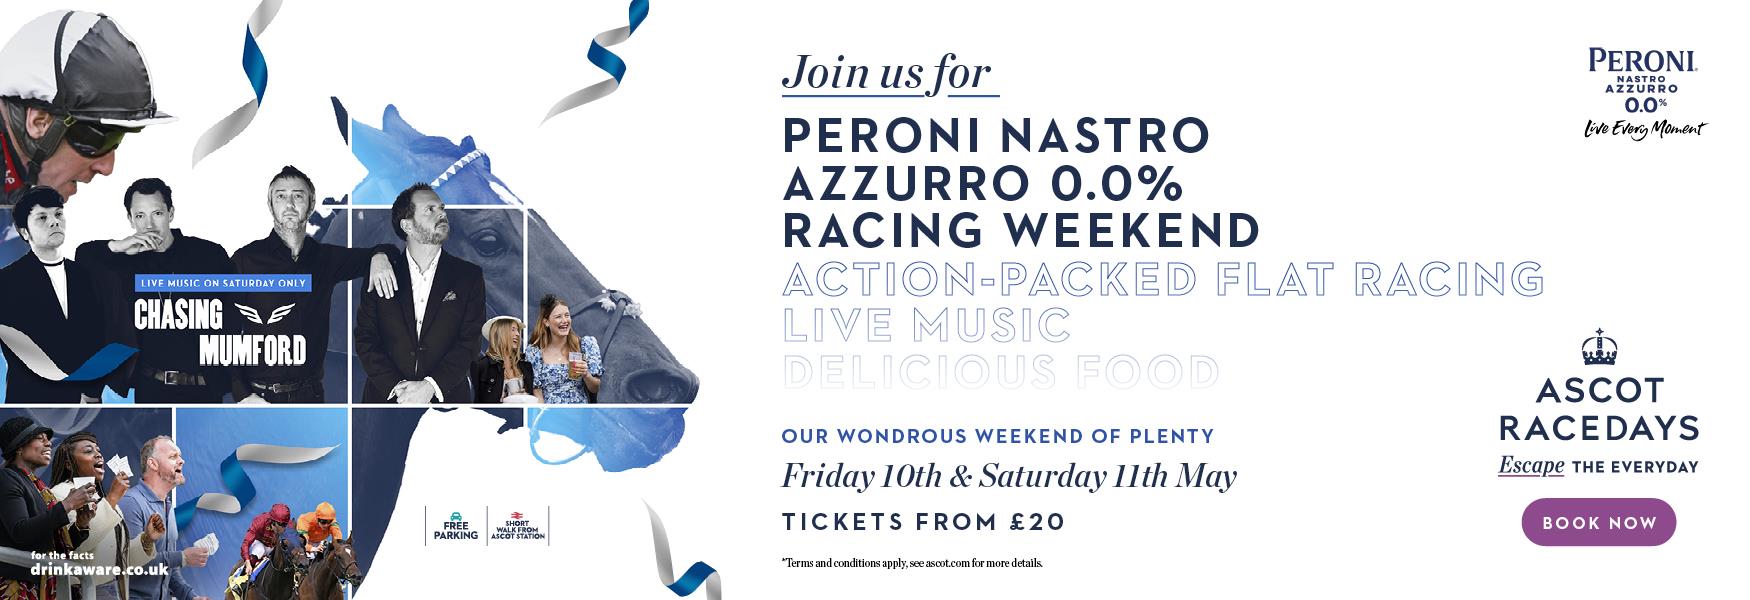 Peroni Nastro Azzurro May Racing Weekend|